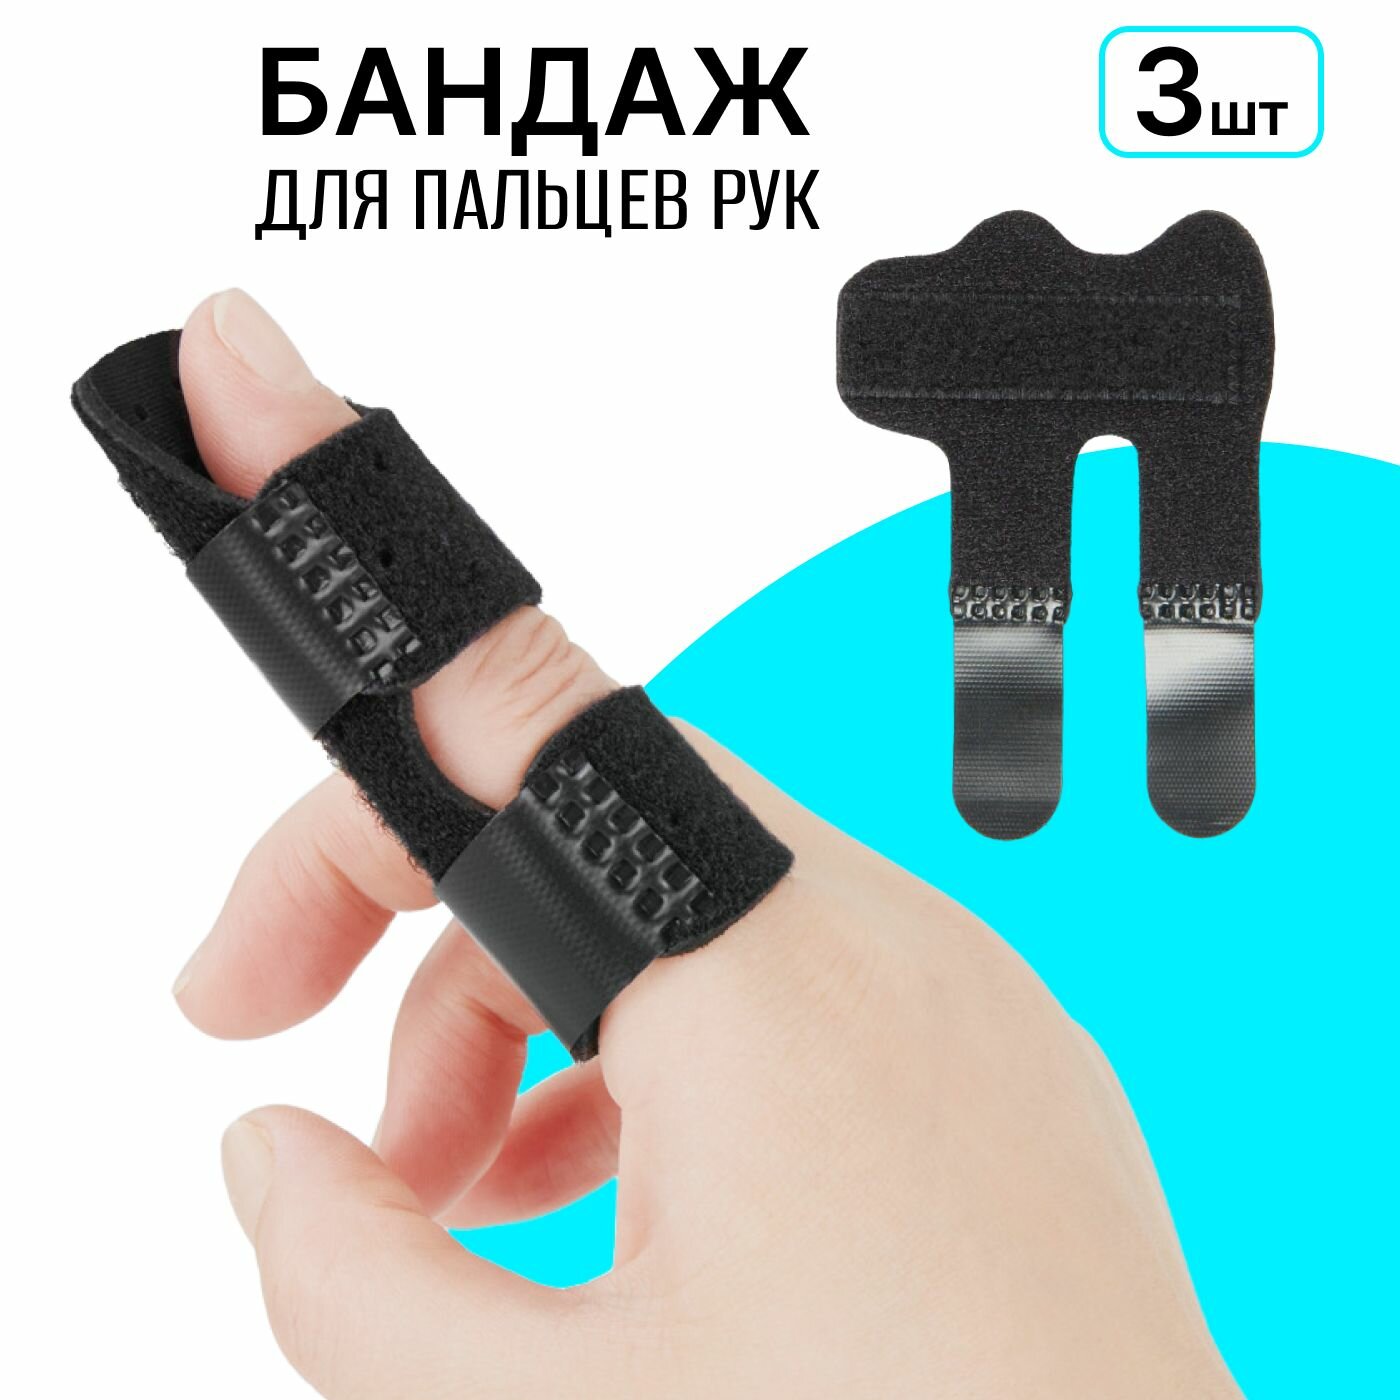 Бандаж для пальца с металлической пластиной на пястно - фаланговый сустав, отрез для пальцев руки универсальный 3 шт